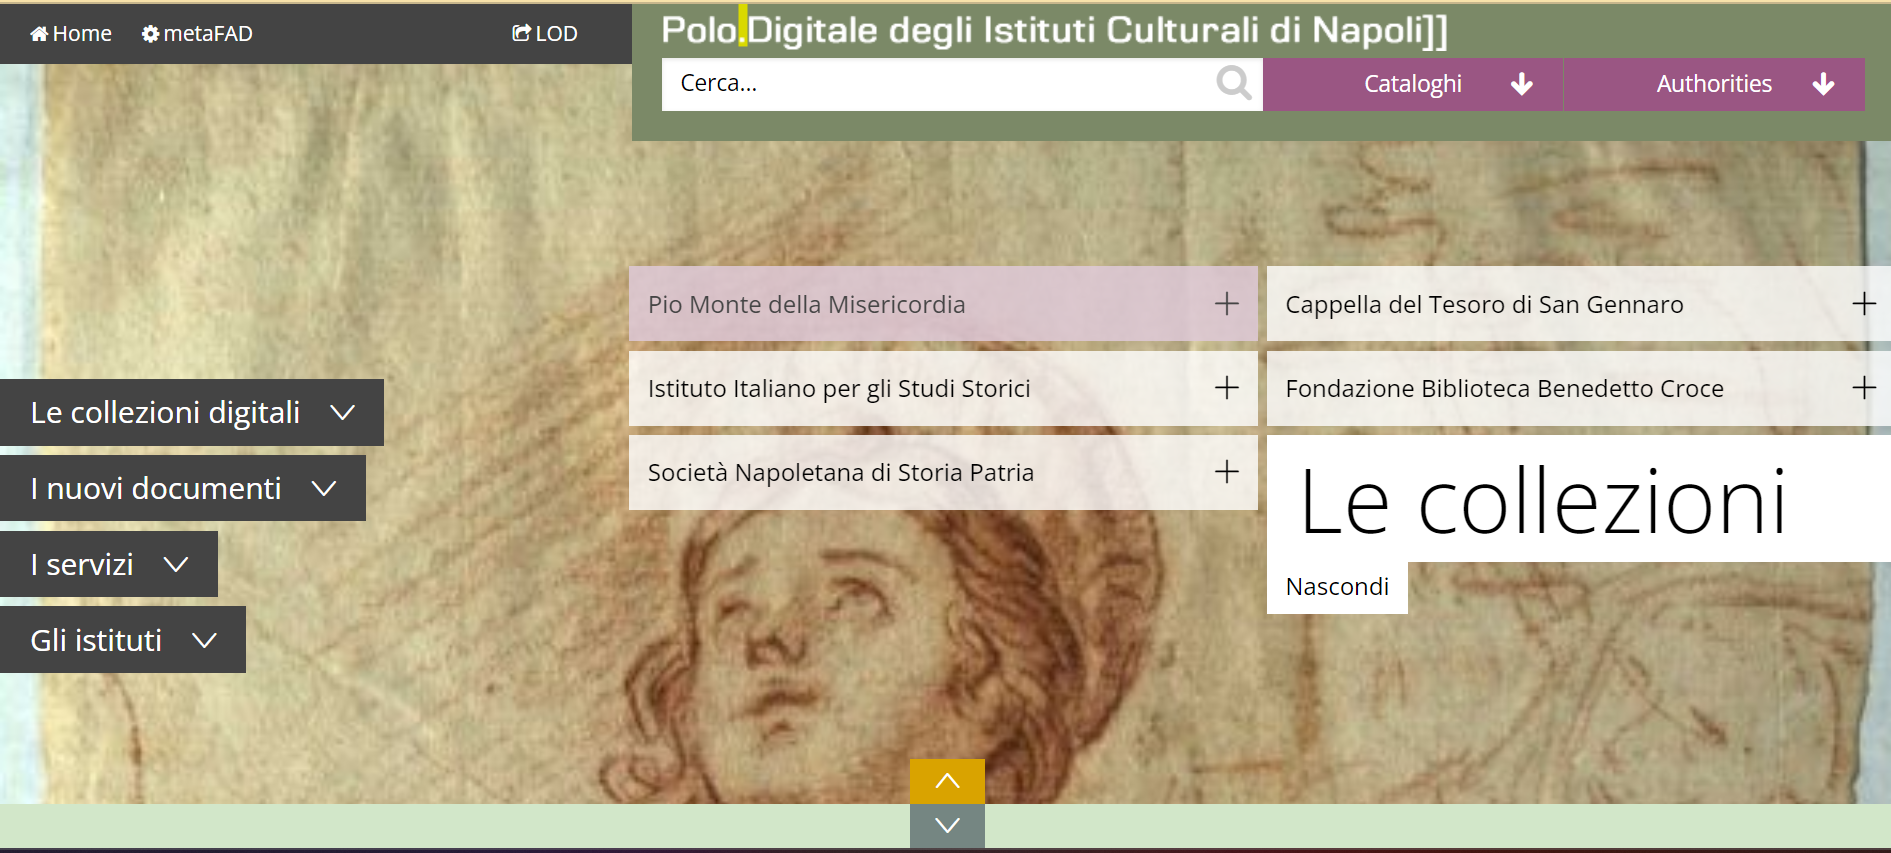 Polo digitale Napoli _ collezioni